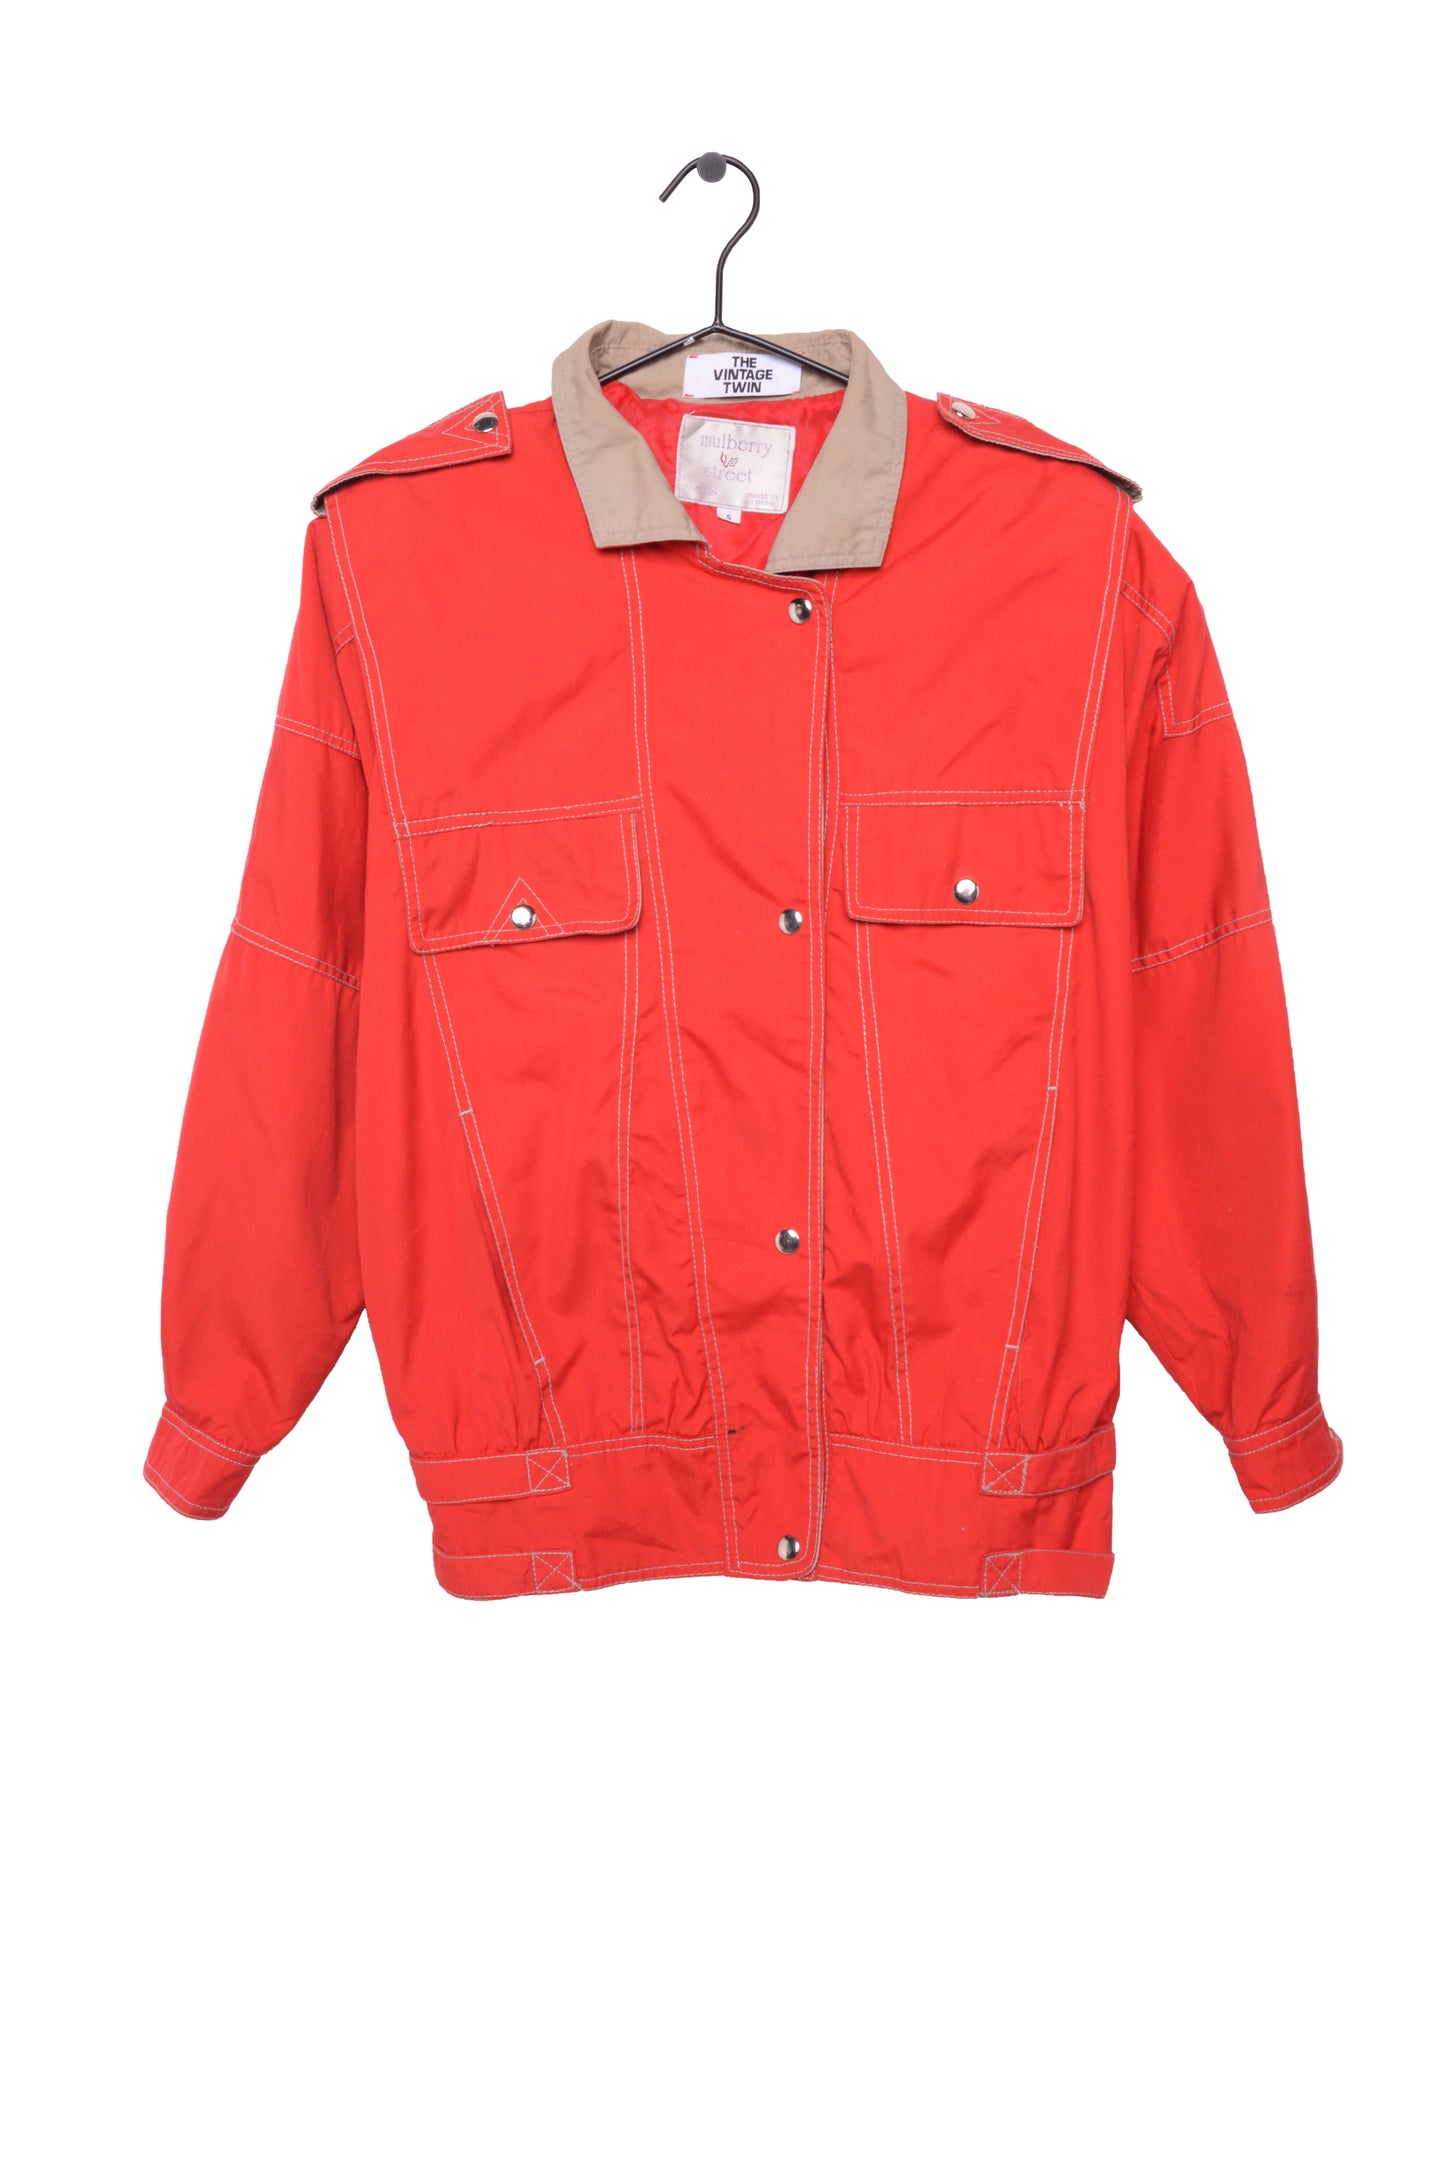 Red Lightweight Work Jacket